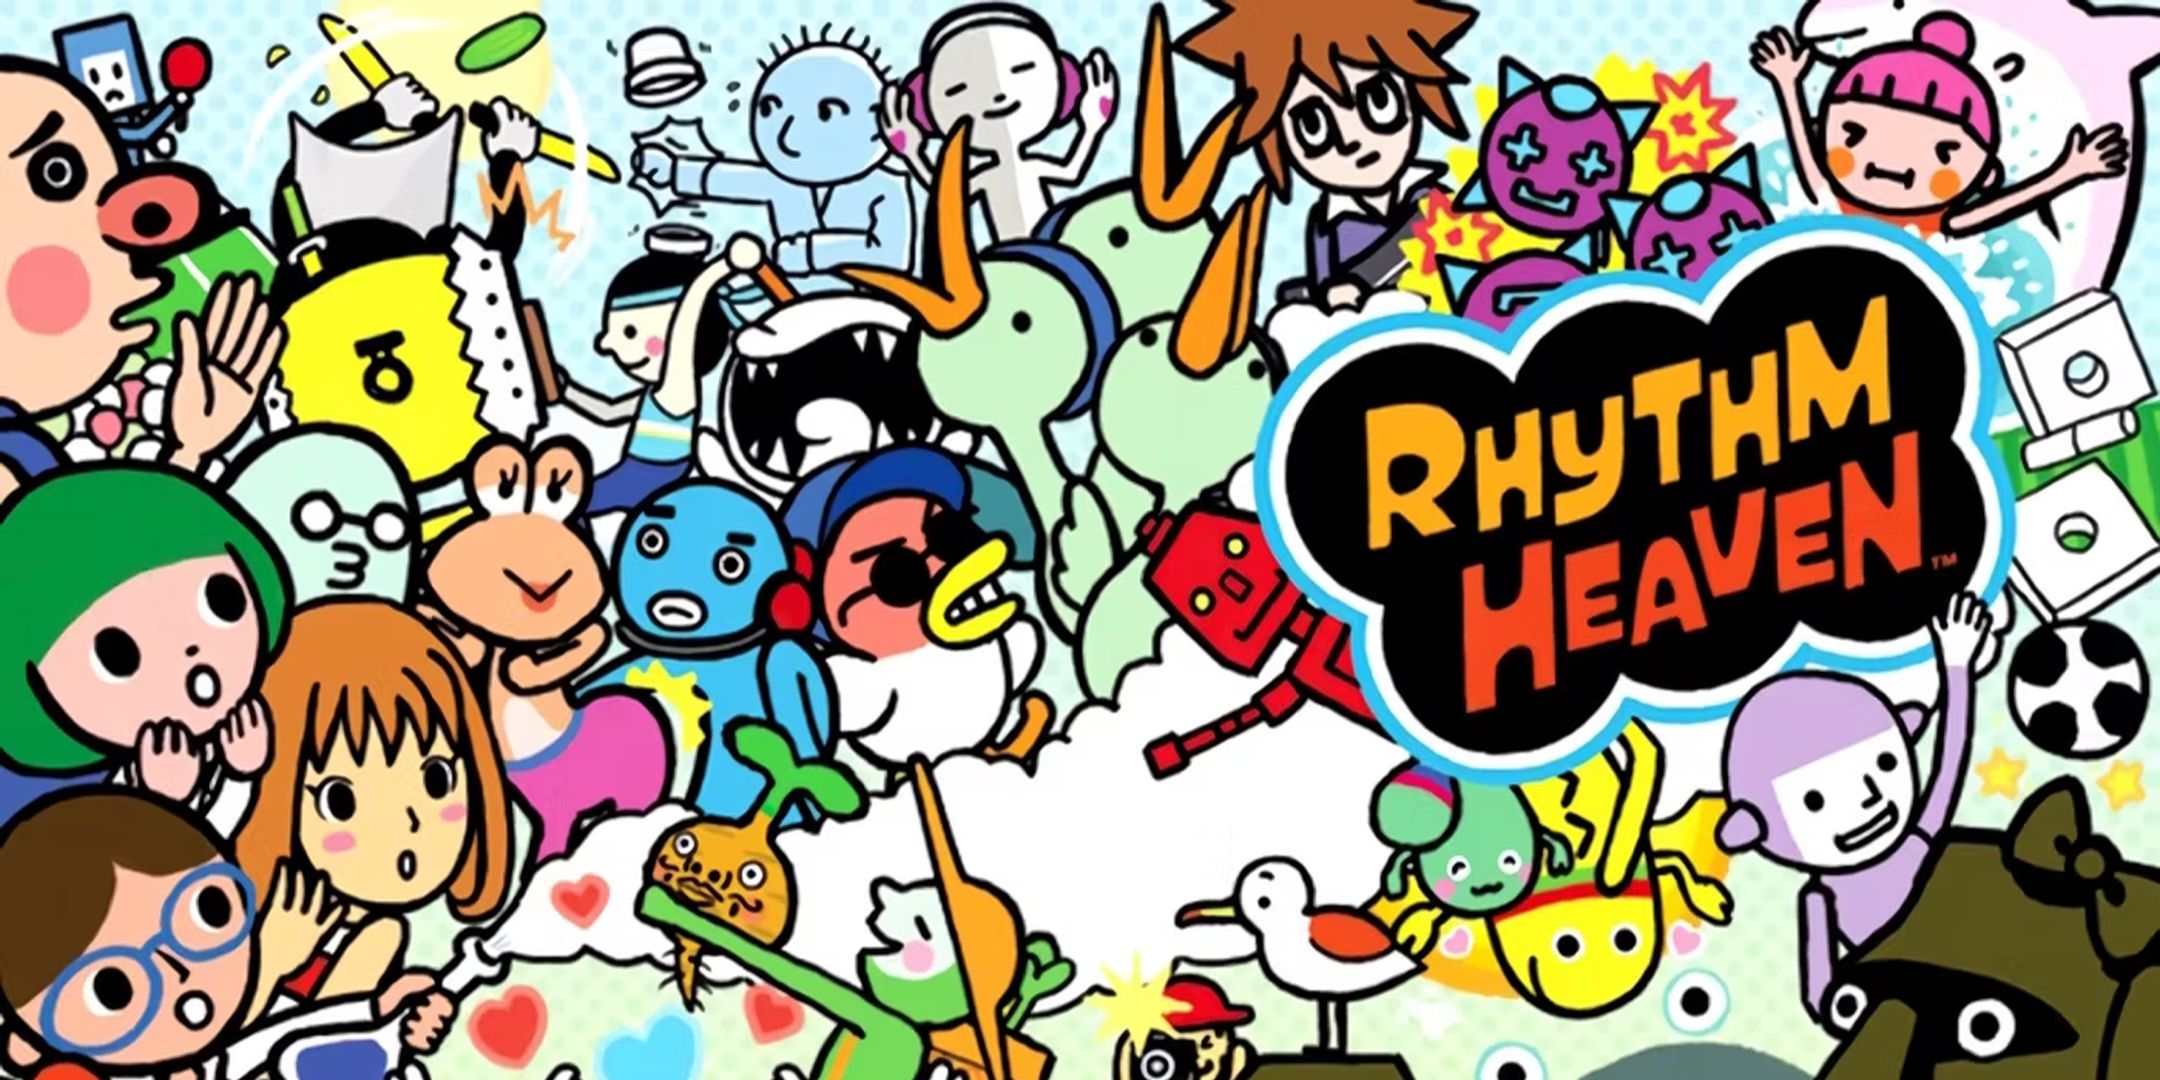 Arte mostrando uma mistura de personagens de desenhos animados do jogo para DS Rhythm Heaven.